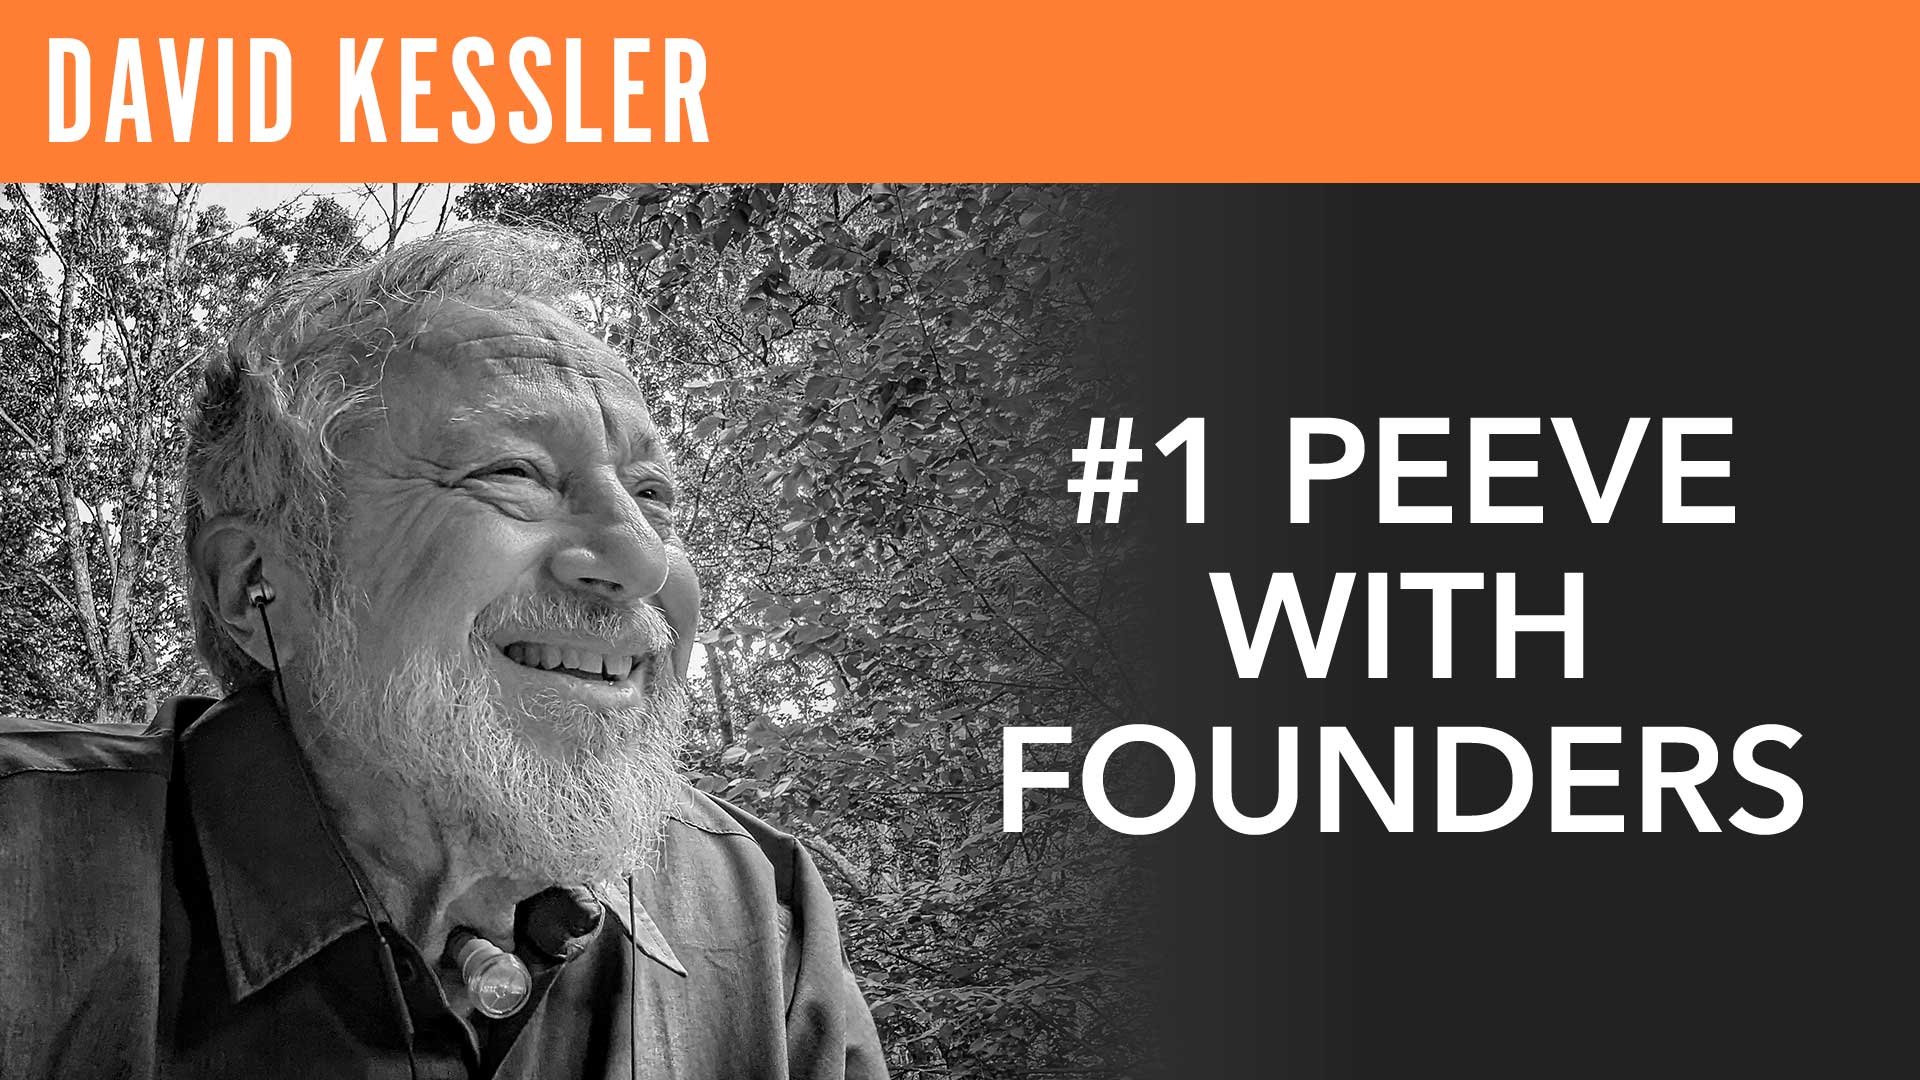 "David Kessler" #1 Peeve with Founders